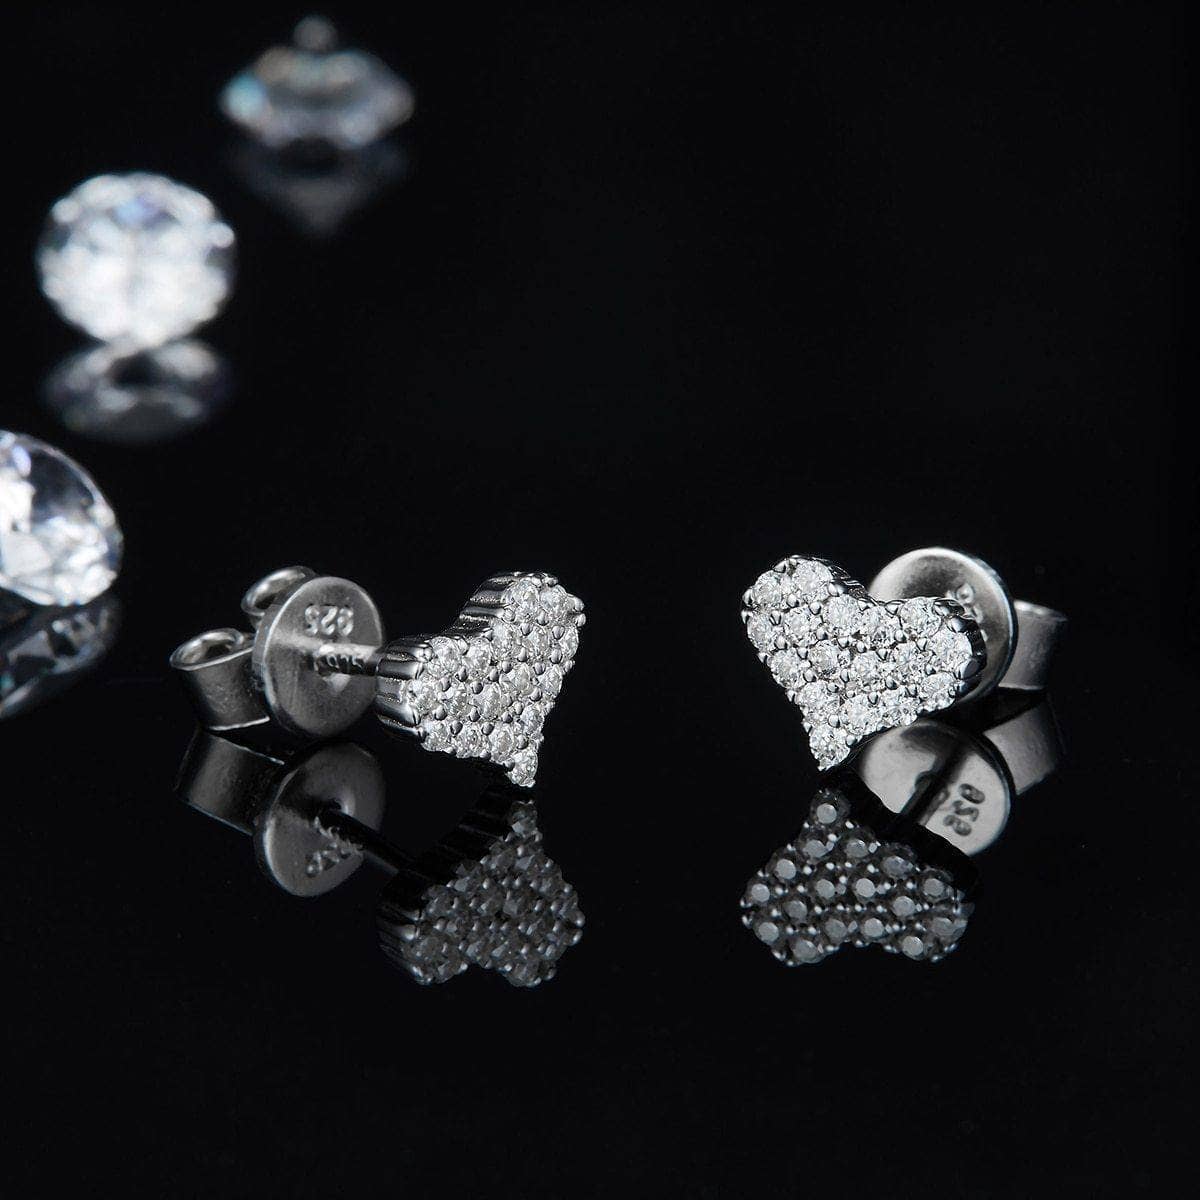 Moissanite Diamond Heart Pendant Necklace Earrings and Bracelet - Black Diamonds New York